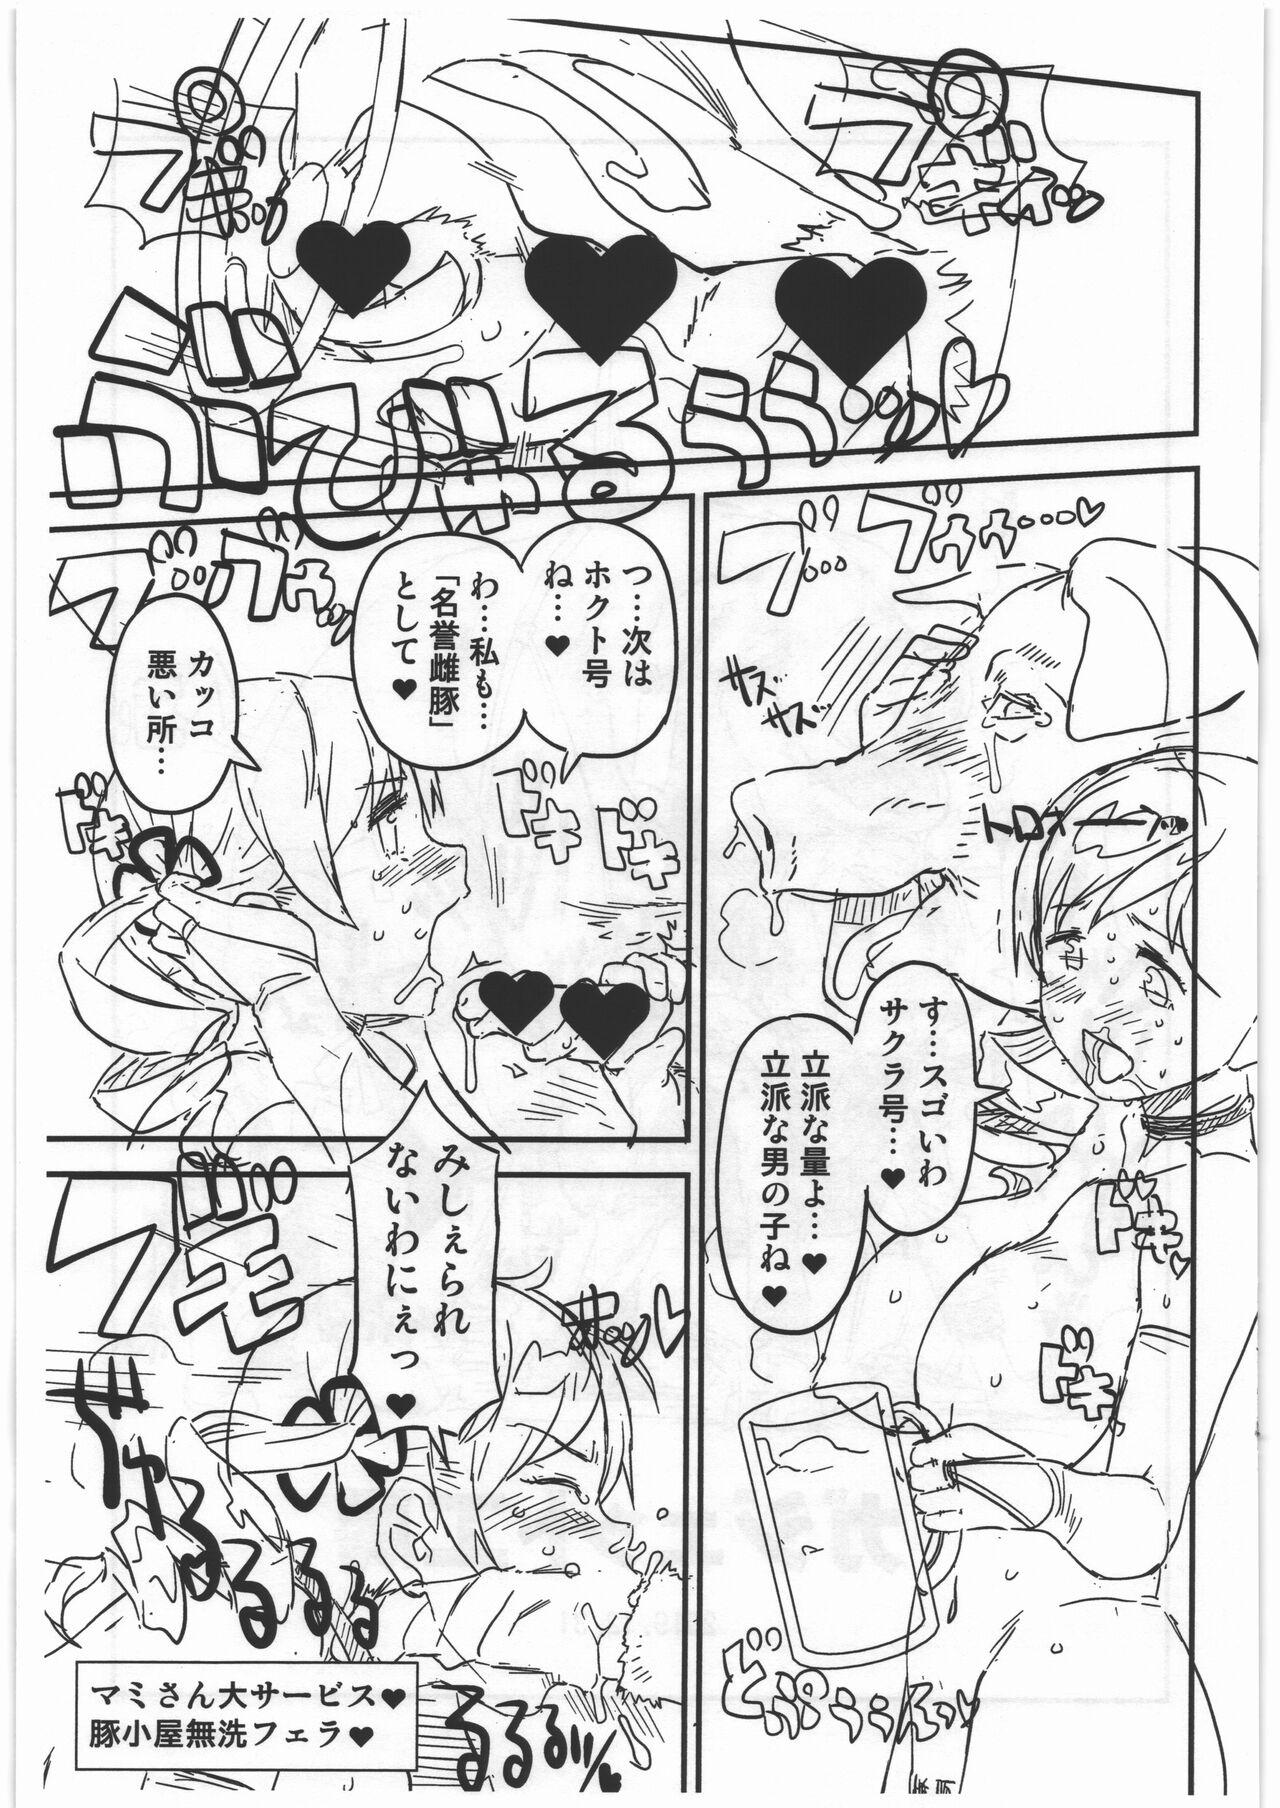 18yearsold CB:NG M★M - Puella magi madoka magica Monster hunter Hardfuck - Page 15